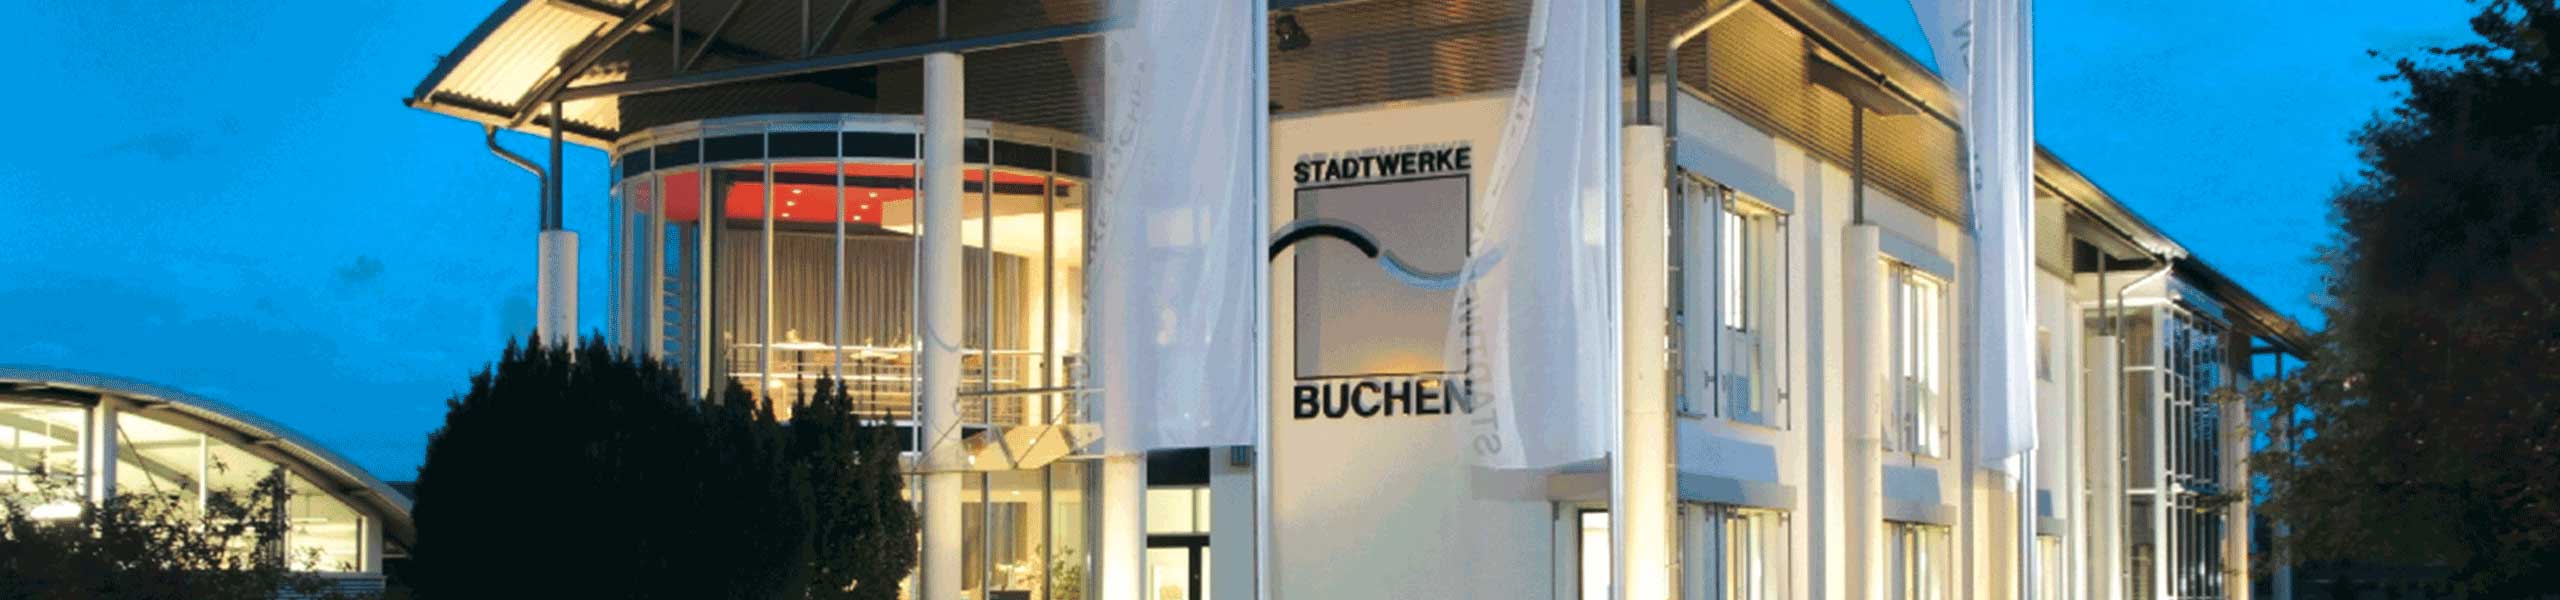 Stadtwerke Buchen GmbH & Co KG - Ihr Versorger vor Ort - Einbach